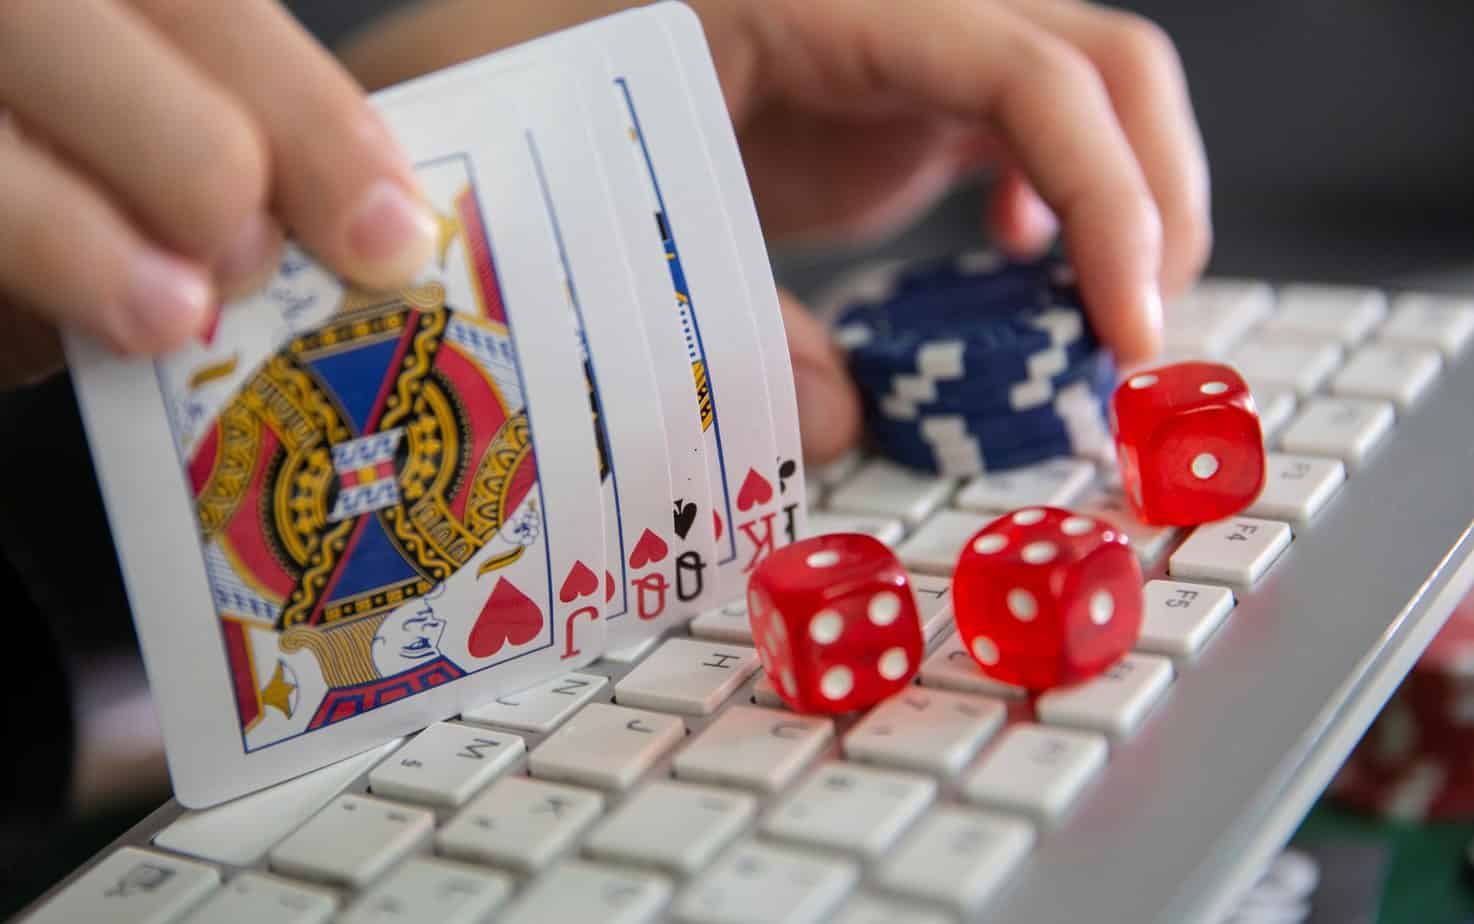 sồng bằng nghề cờ bạc có dễ dàng?